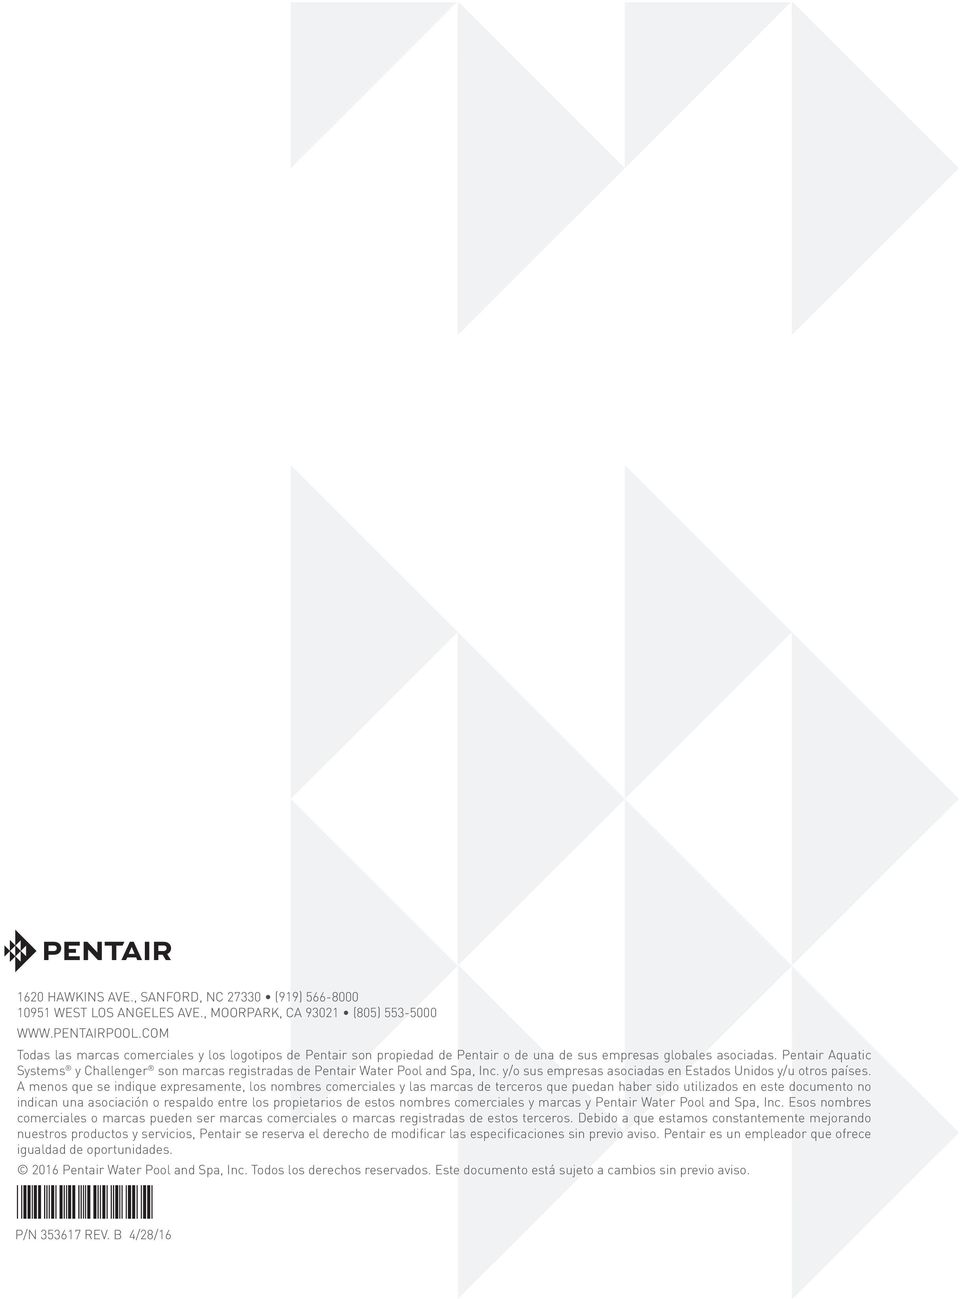 Pentair Aquatic Systems y Challenger son marcas registradas de Pentair Water Pool and Spa, Inc. y/o sus empresas asociadas en Estados Unidos y/u otros países.